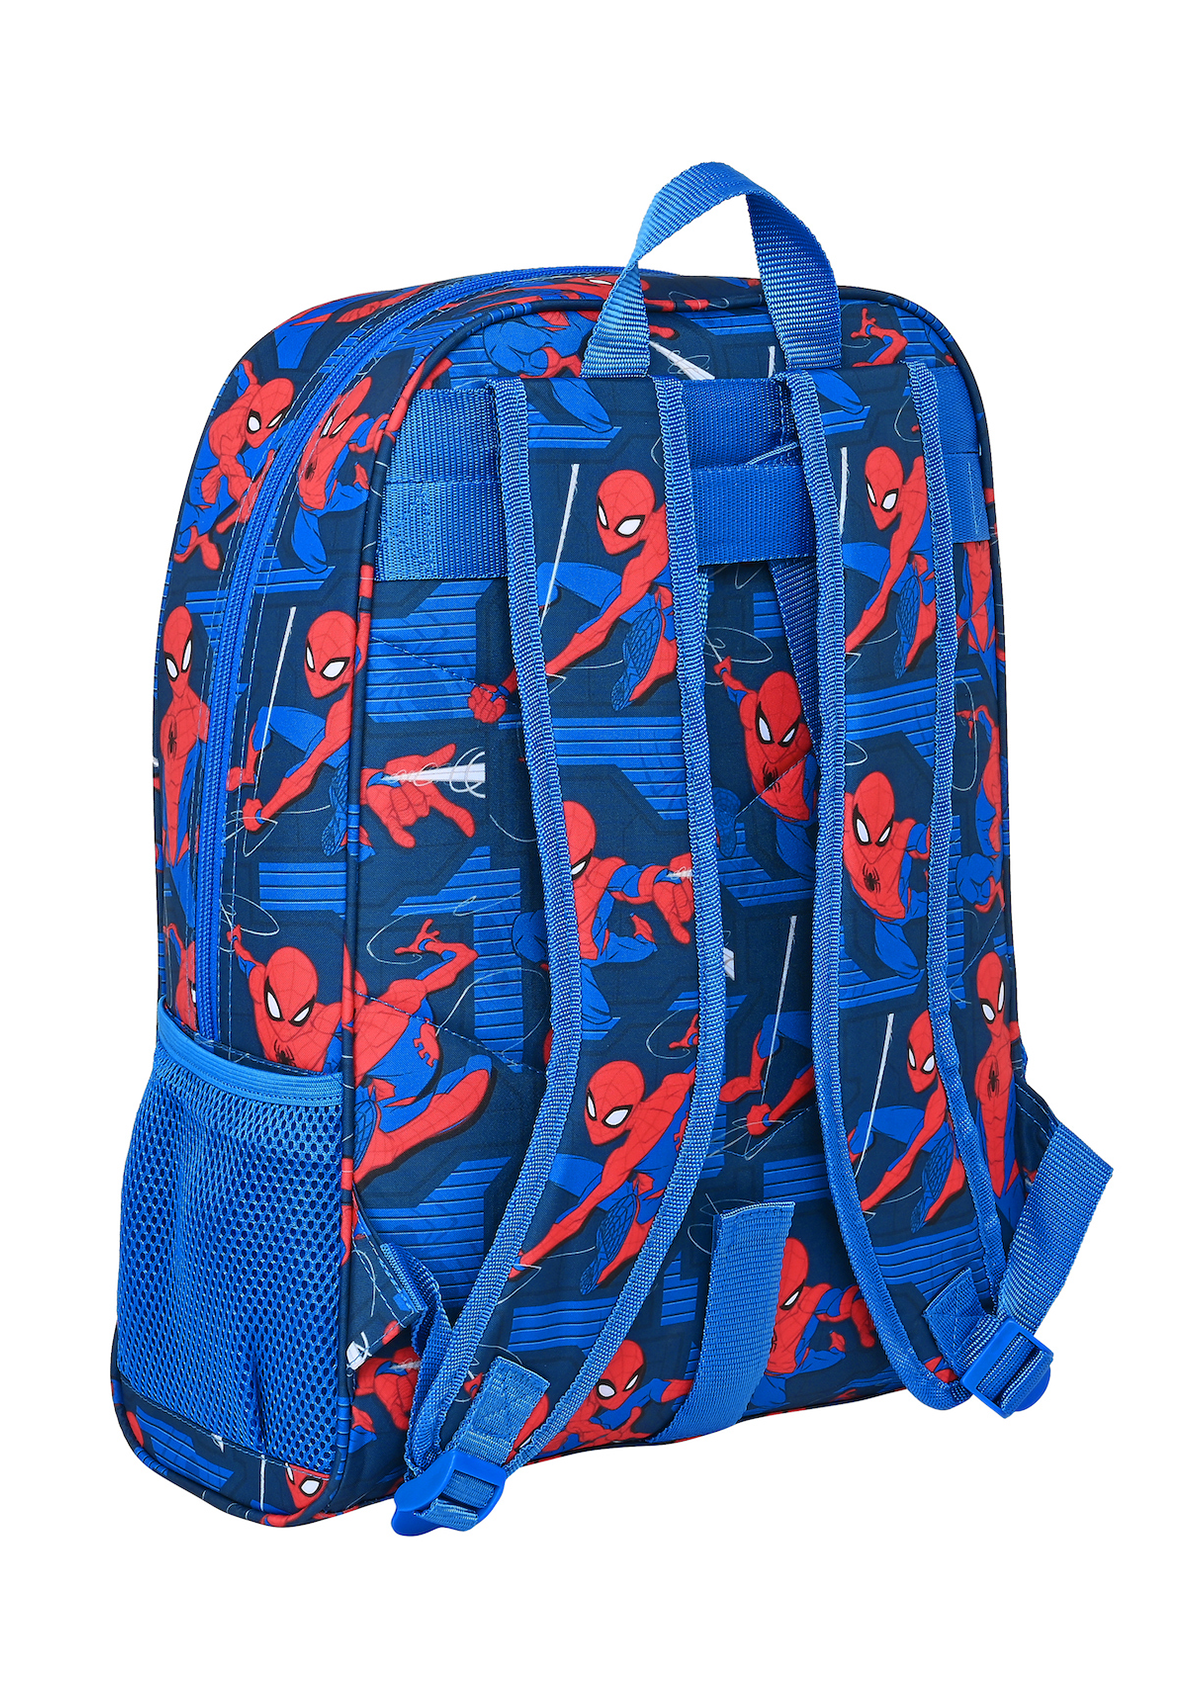 Marvel Spiderman Large Backpack